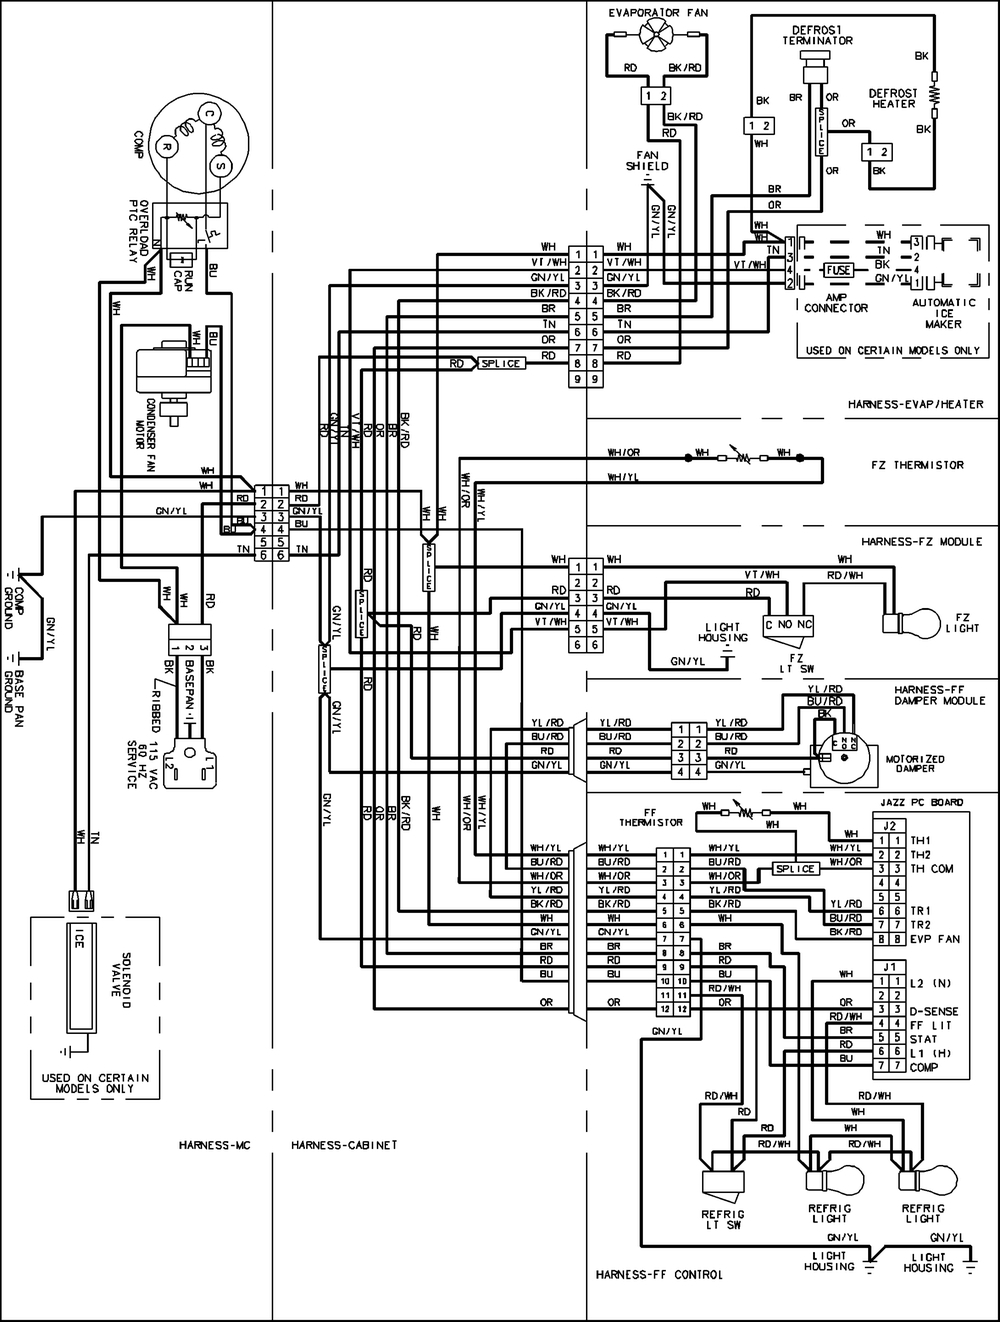 Amanna Refrigerator Wiring Diagram | Wiring Diagram - Refrigerator Wiring Diagram Pdf